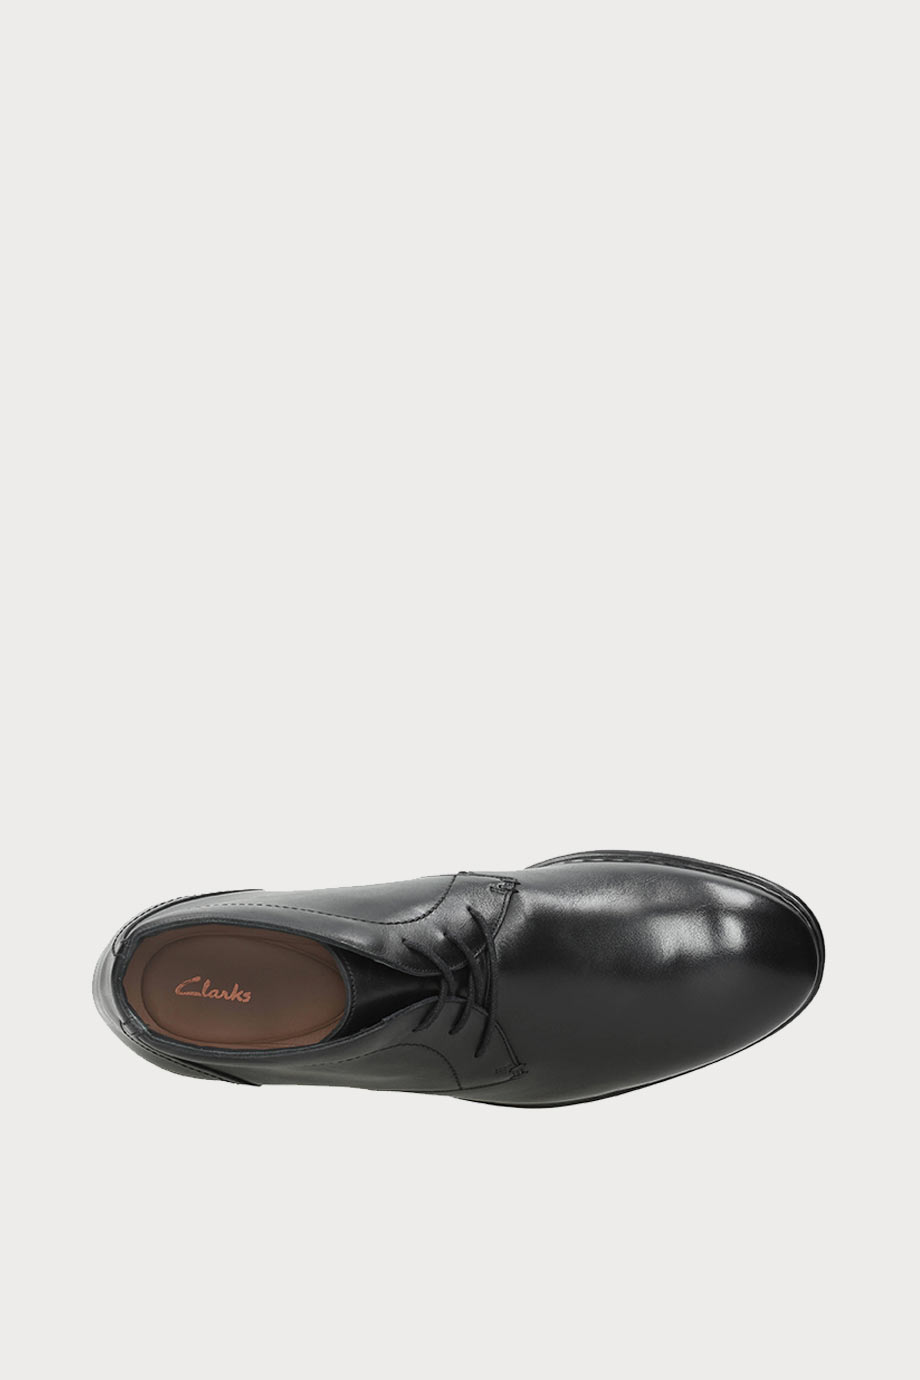 spiridoula metheniti shoes xalkida p banbury mid black leather clarks 8